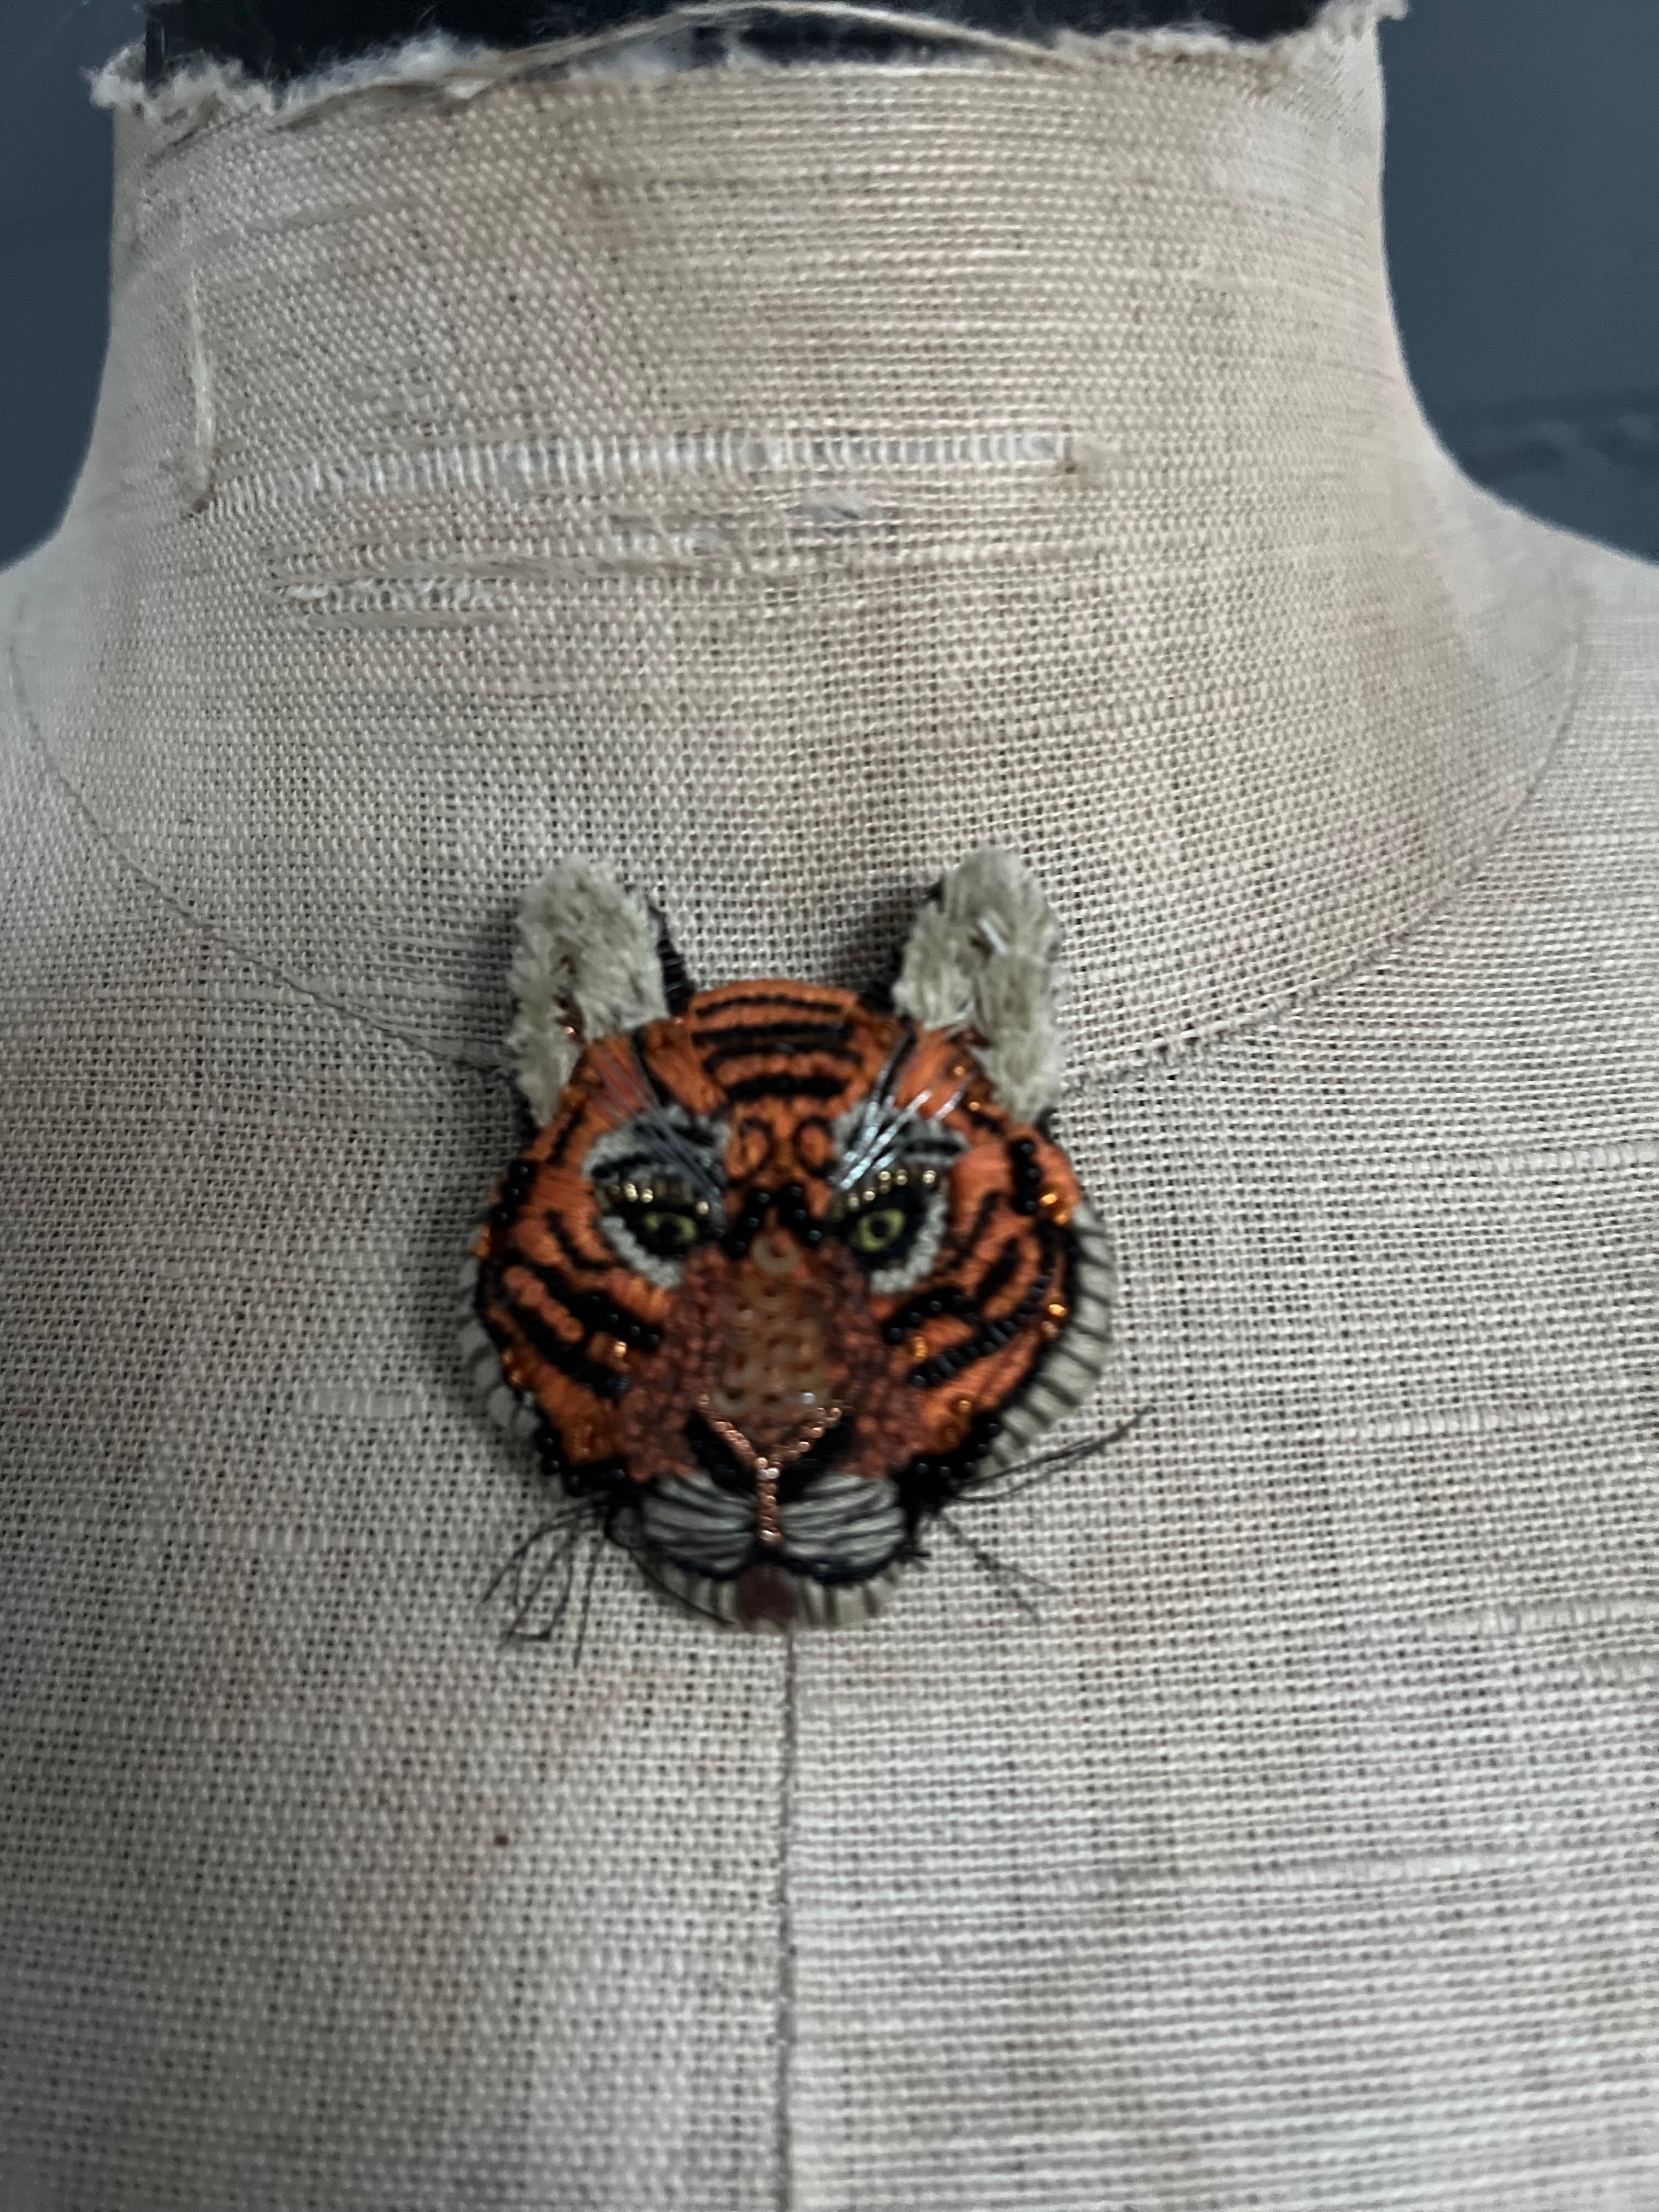 Handmade Brooch Pin - Tiger